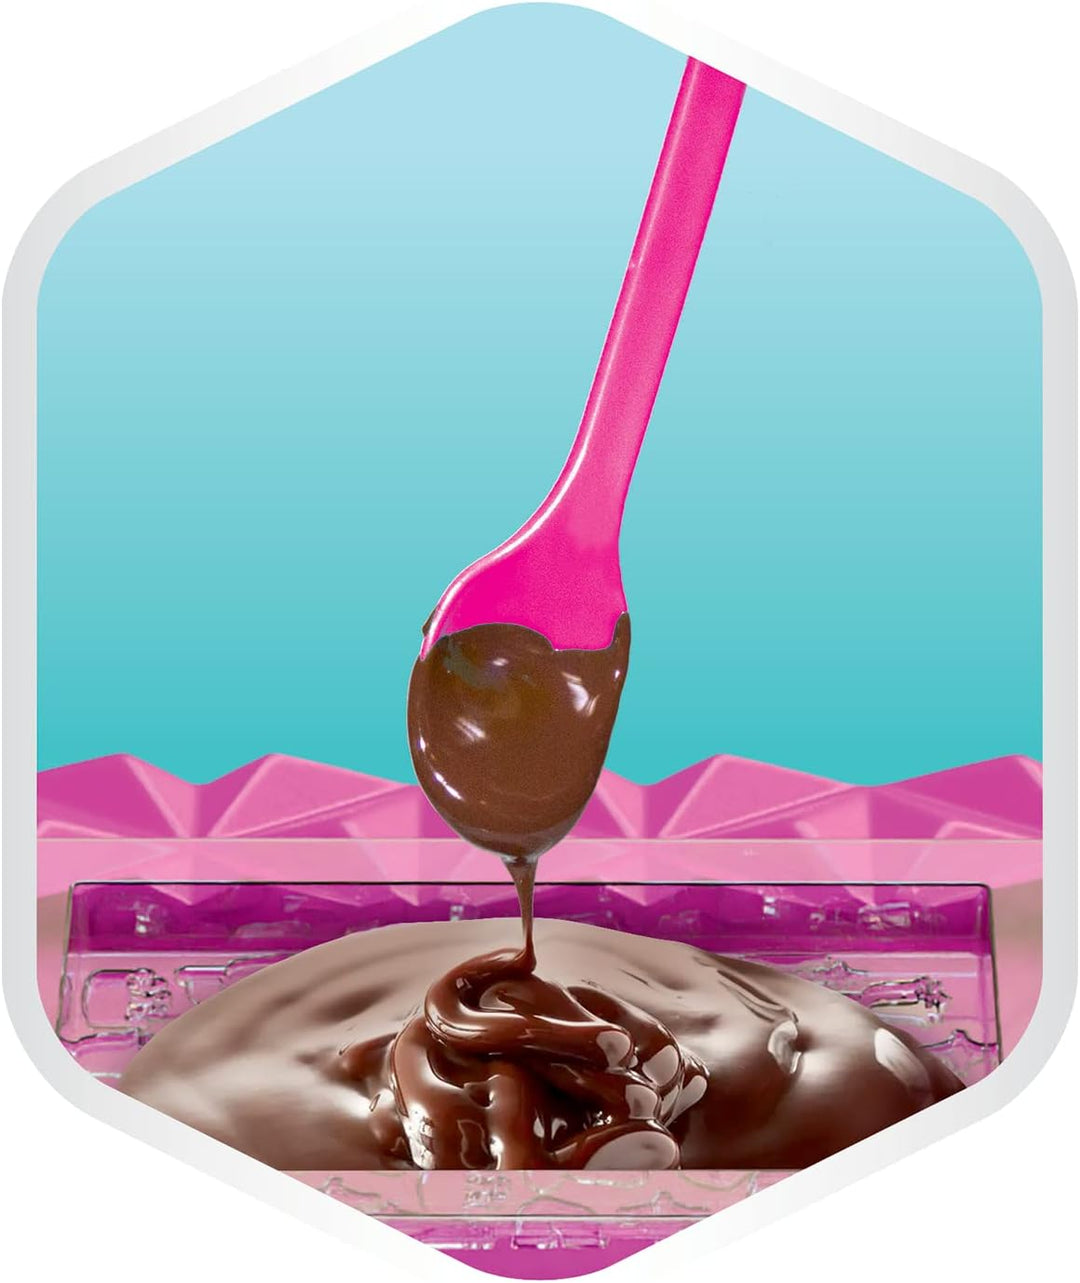 Mini Delices Chocolate Bar Maker (MND01003)